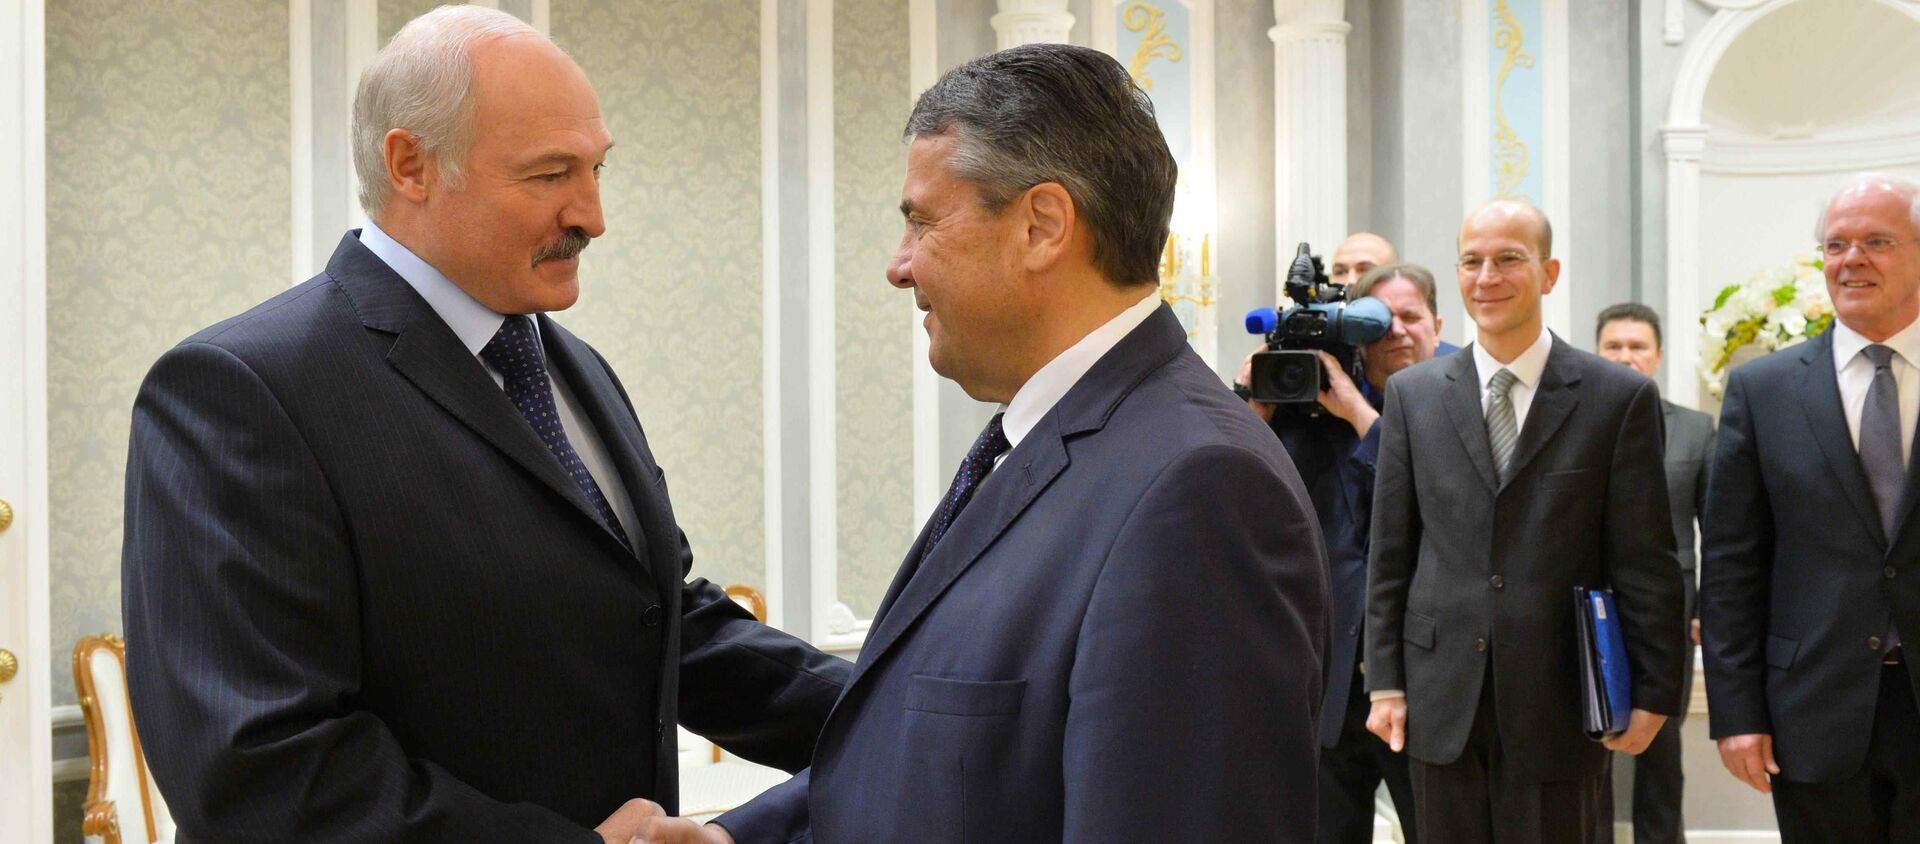 Президент Беларуси Александр Лукашенко и вице-канцлер, федеральный министр иностранных дел ФРГ Зигмар Габриэль - Sputnik Беларусь, 1920, 17.11.2017